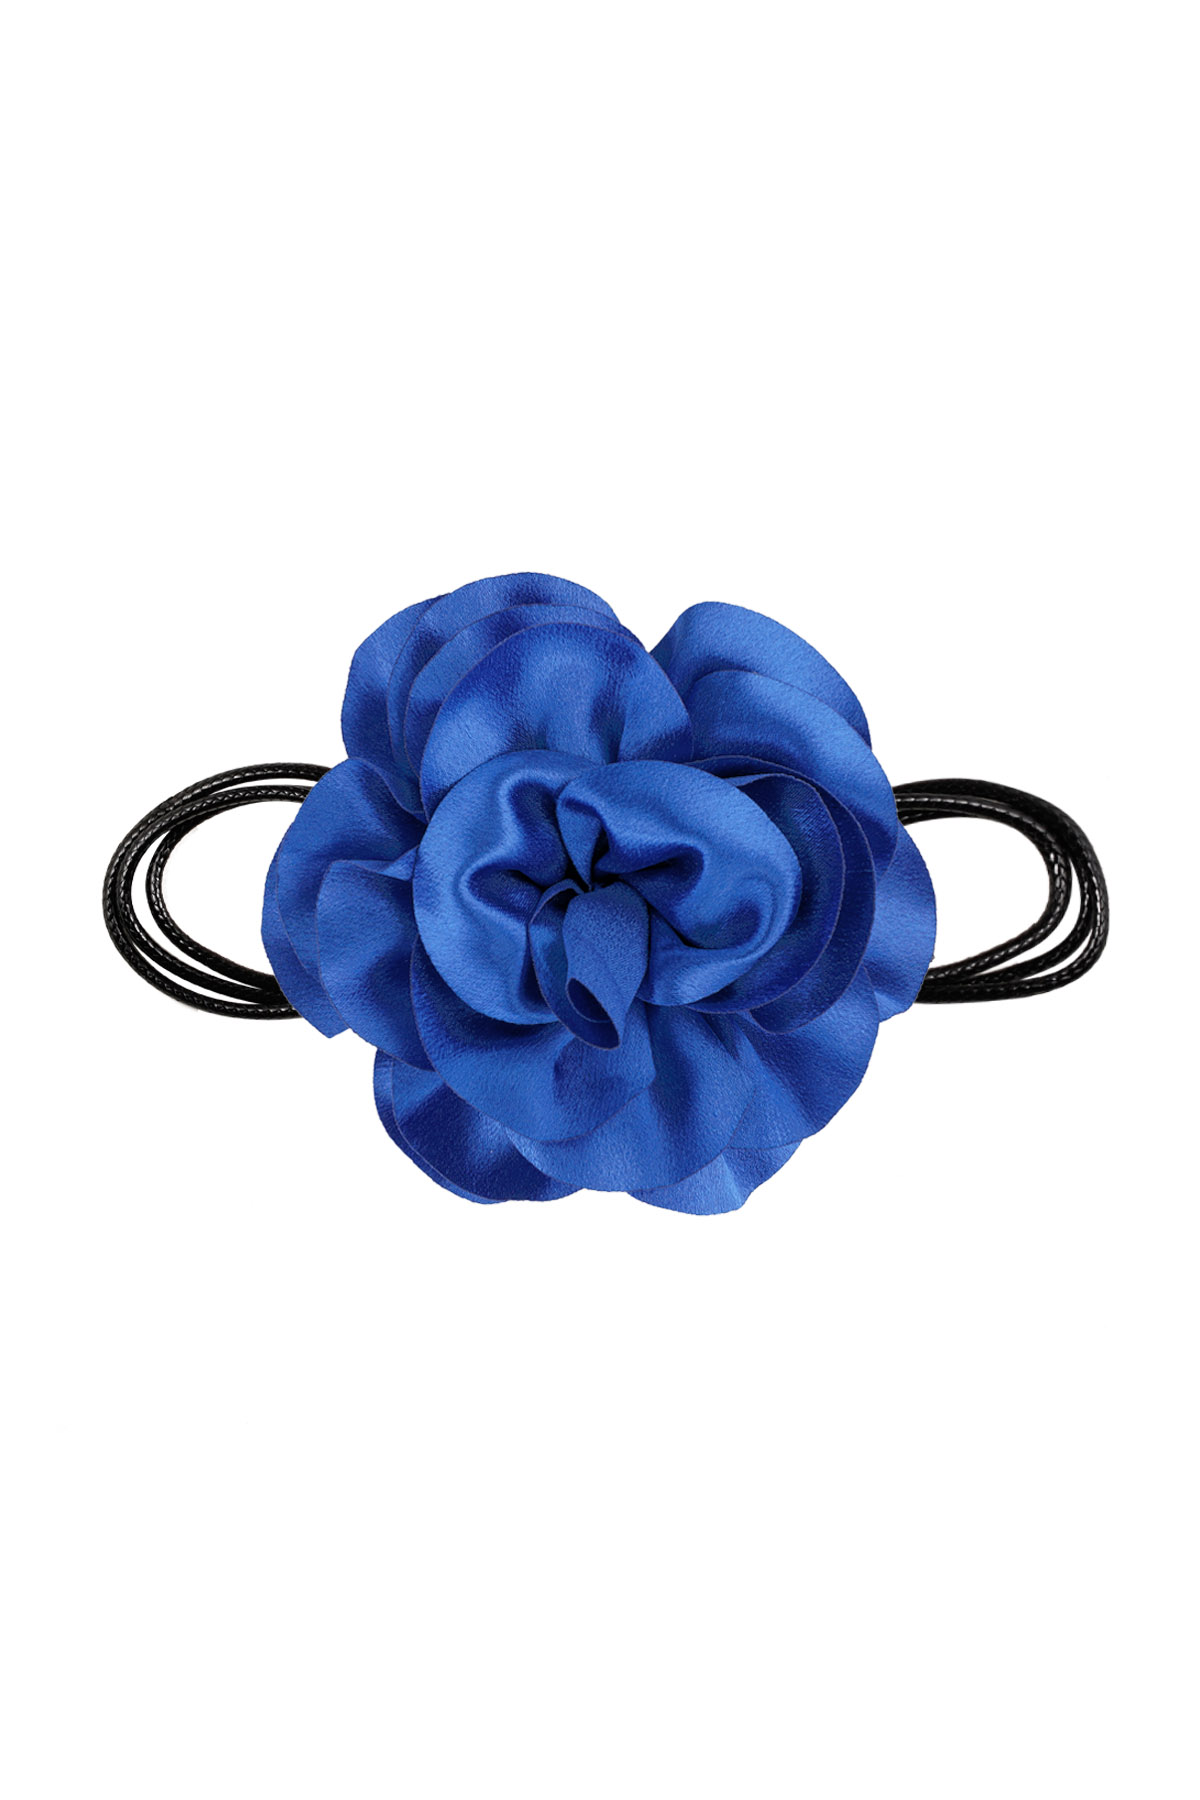 Collana corda fiore lucido - blu brillante 